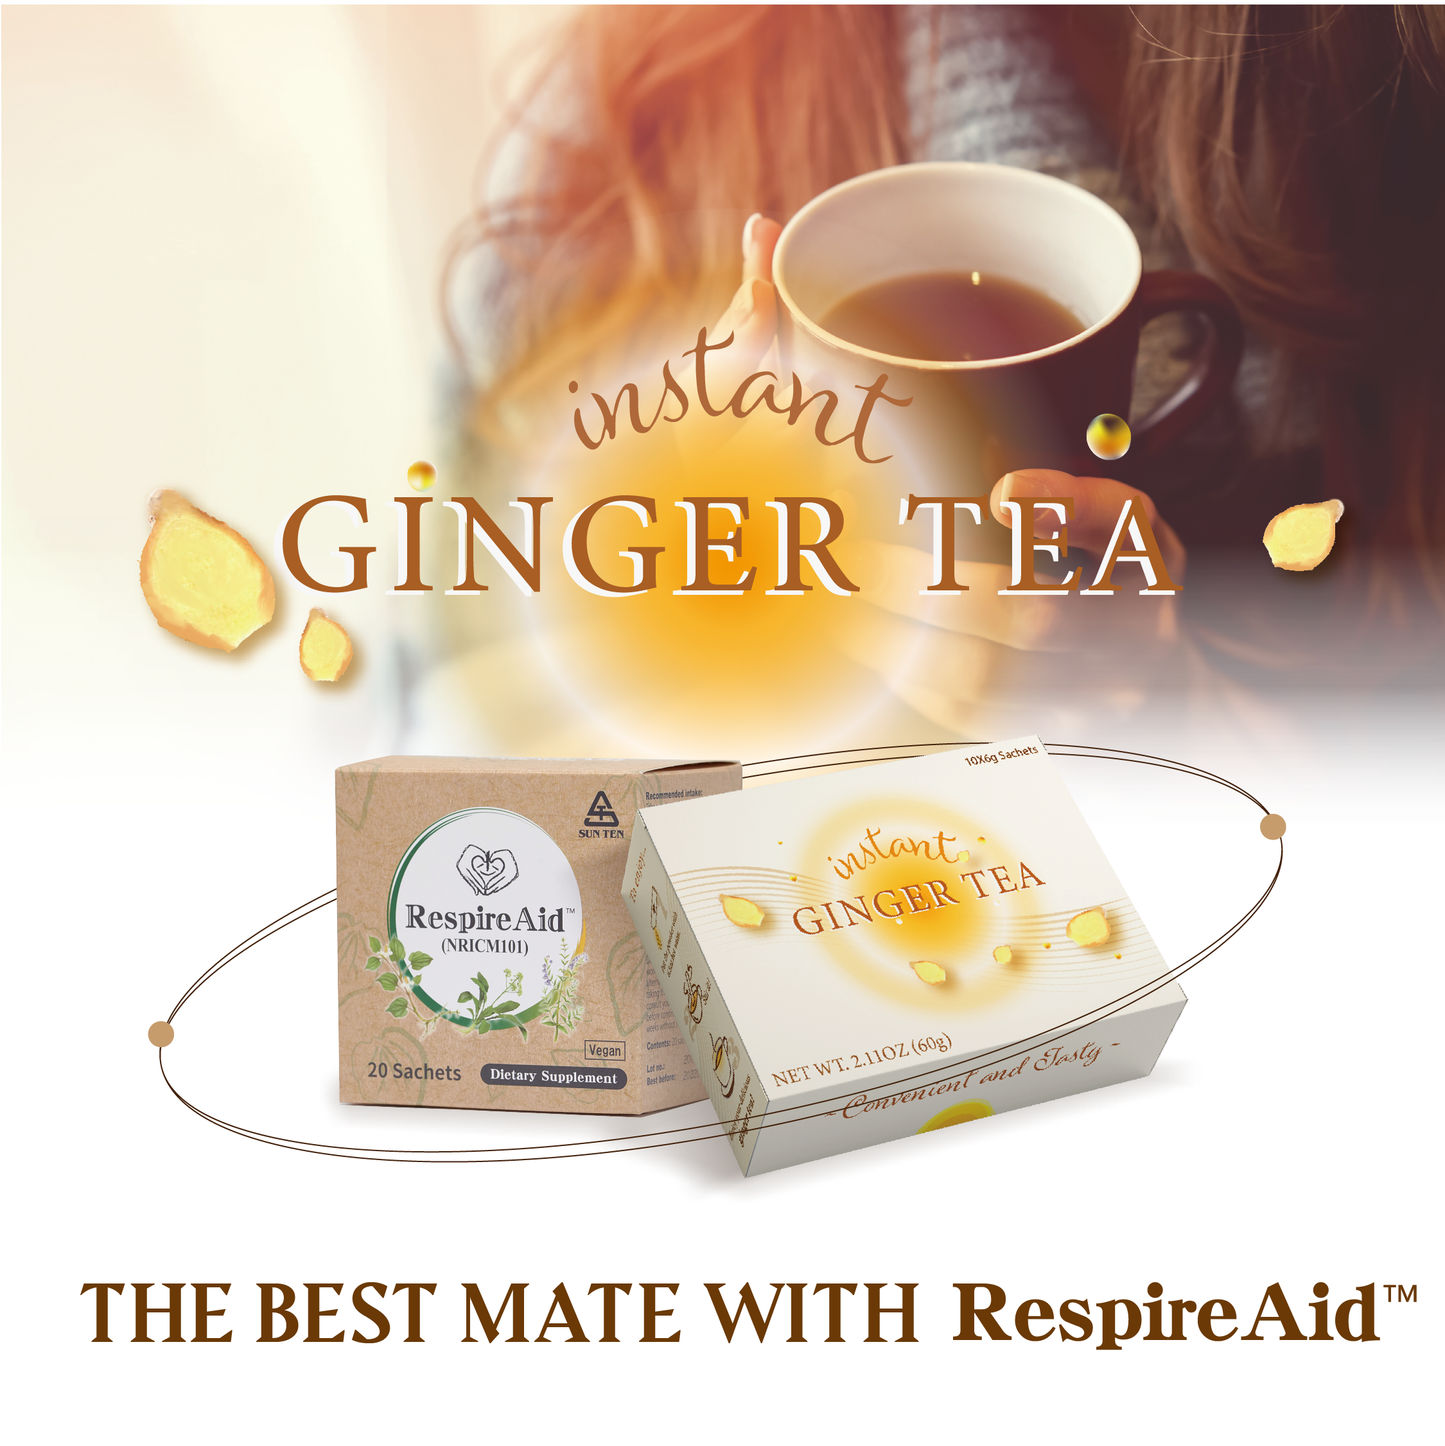 (清冠小套組) 清冠一號 SunTen Glory 10™ x1 + 暖心生薑茶 Instant Ginger Tea x2